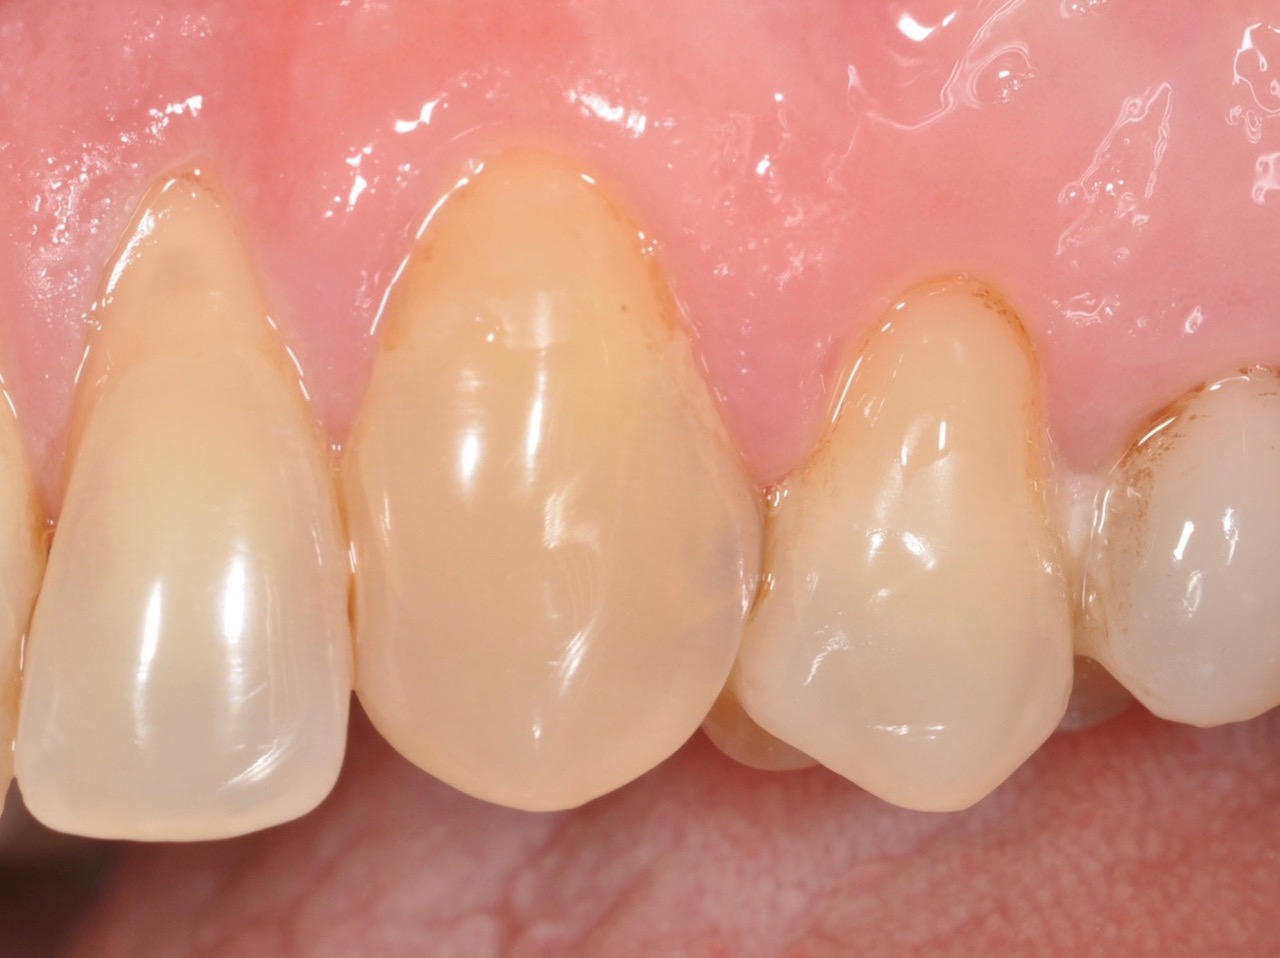 Zahn 23 (Restauration mit G-Bond) und Zahn 24 (Restauration mit Optibond FL) nach 9 Jahren.